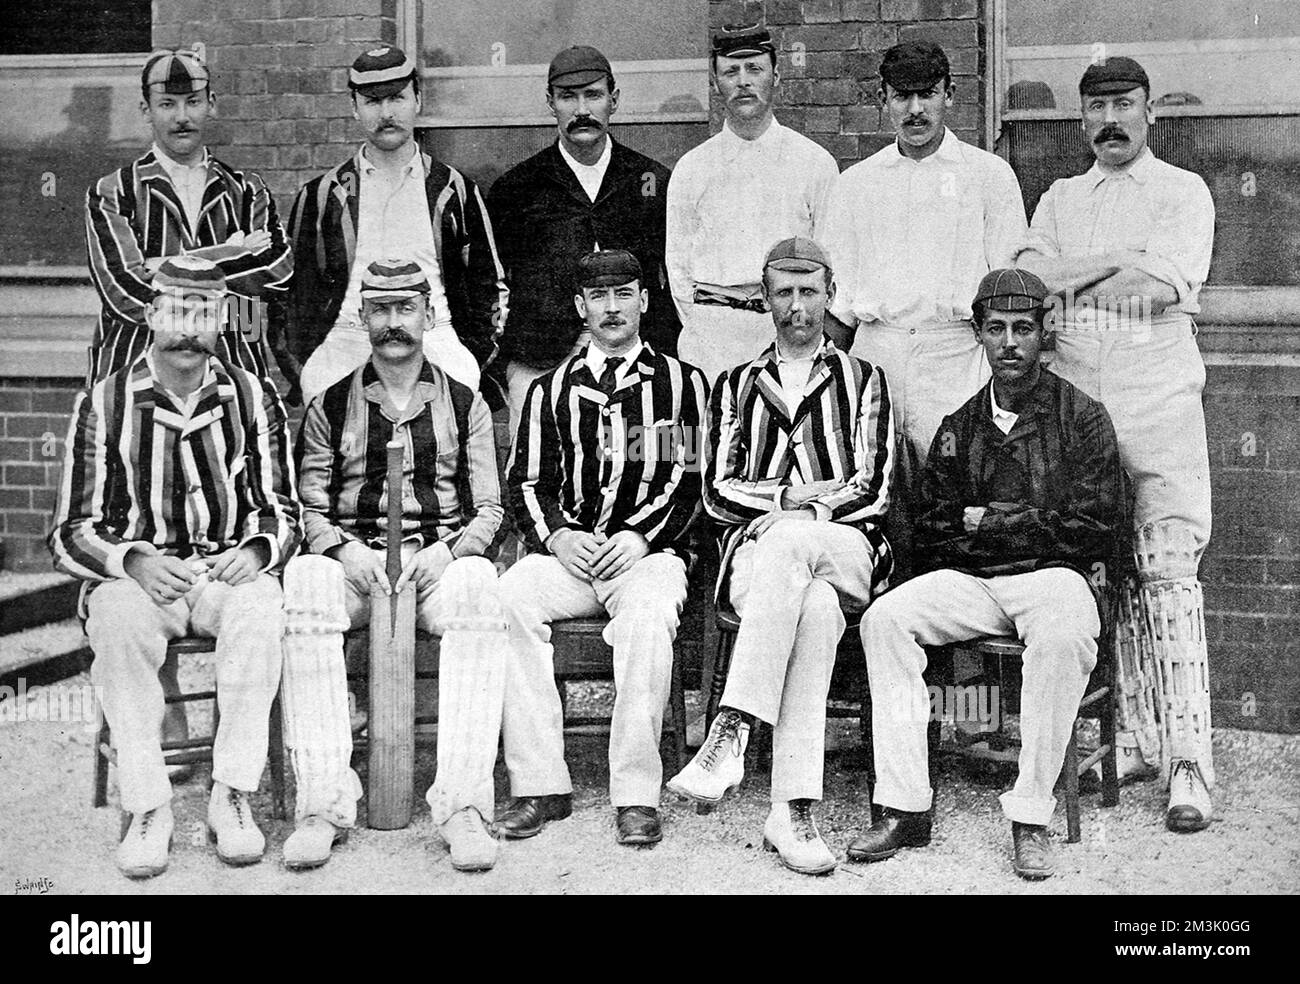 Photographie de l'équipe de cricket du comté de Middlesex pour la saison 1892. Rangée arrière, de gauche à droite : R.S. Lucas, T.C. O'Brien, Phillips, West, Hearne, Rawlin. Rangée avant, de gauche à droite : A.E. Stoddart, S.W. Scott, A.J. Webbe (capitaine), E.A. Nepean, P.J.T. Henery. Banque D'Images